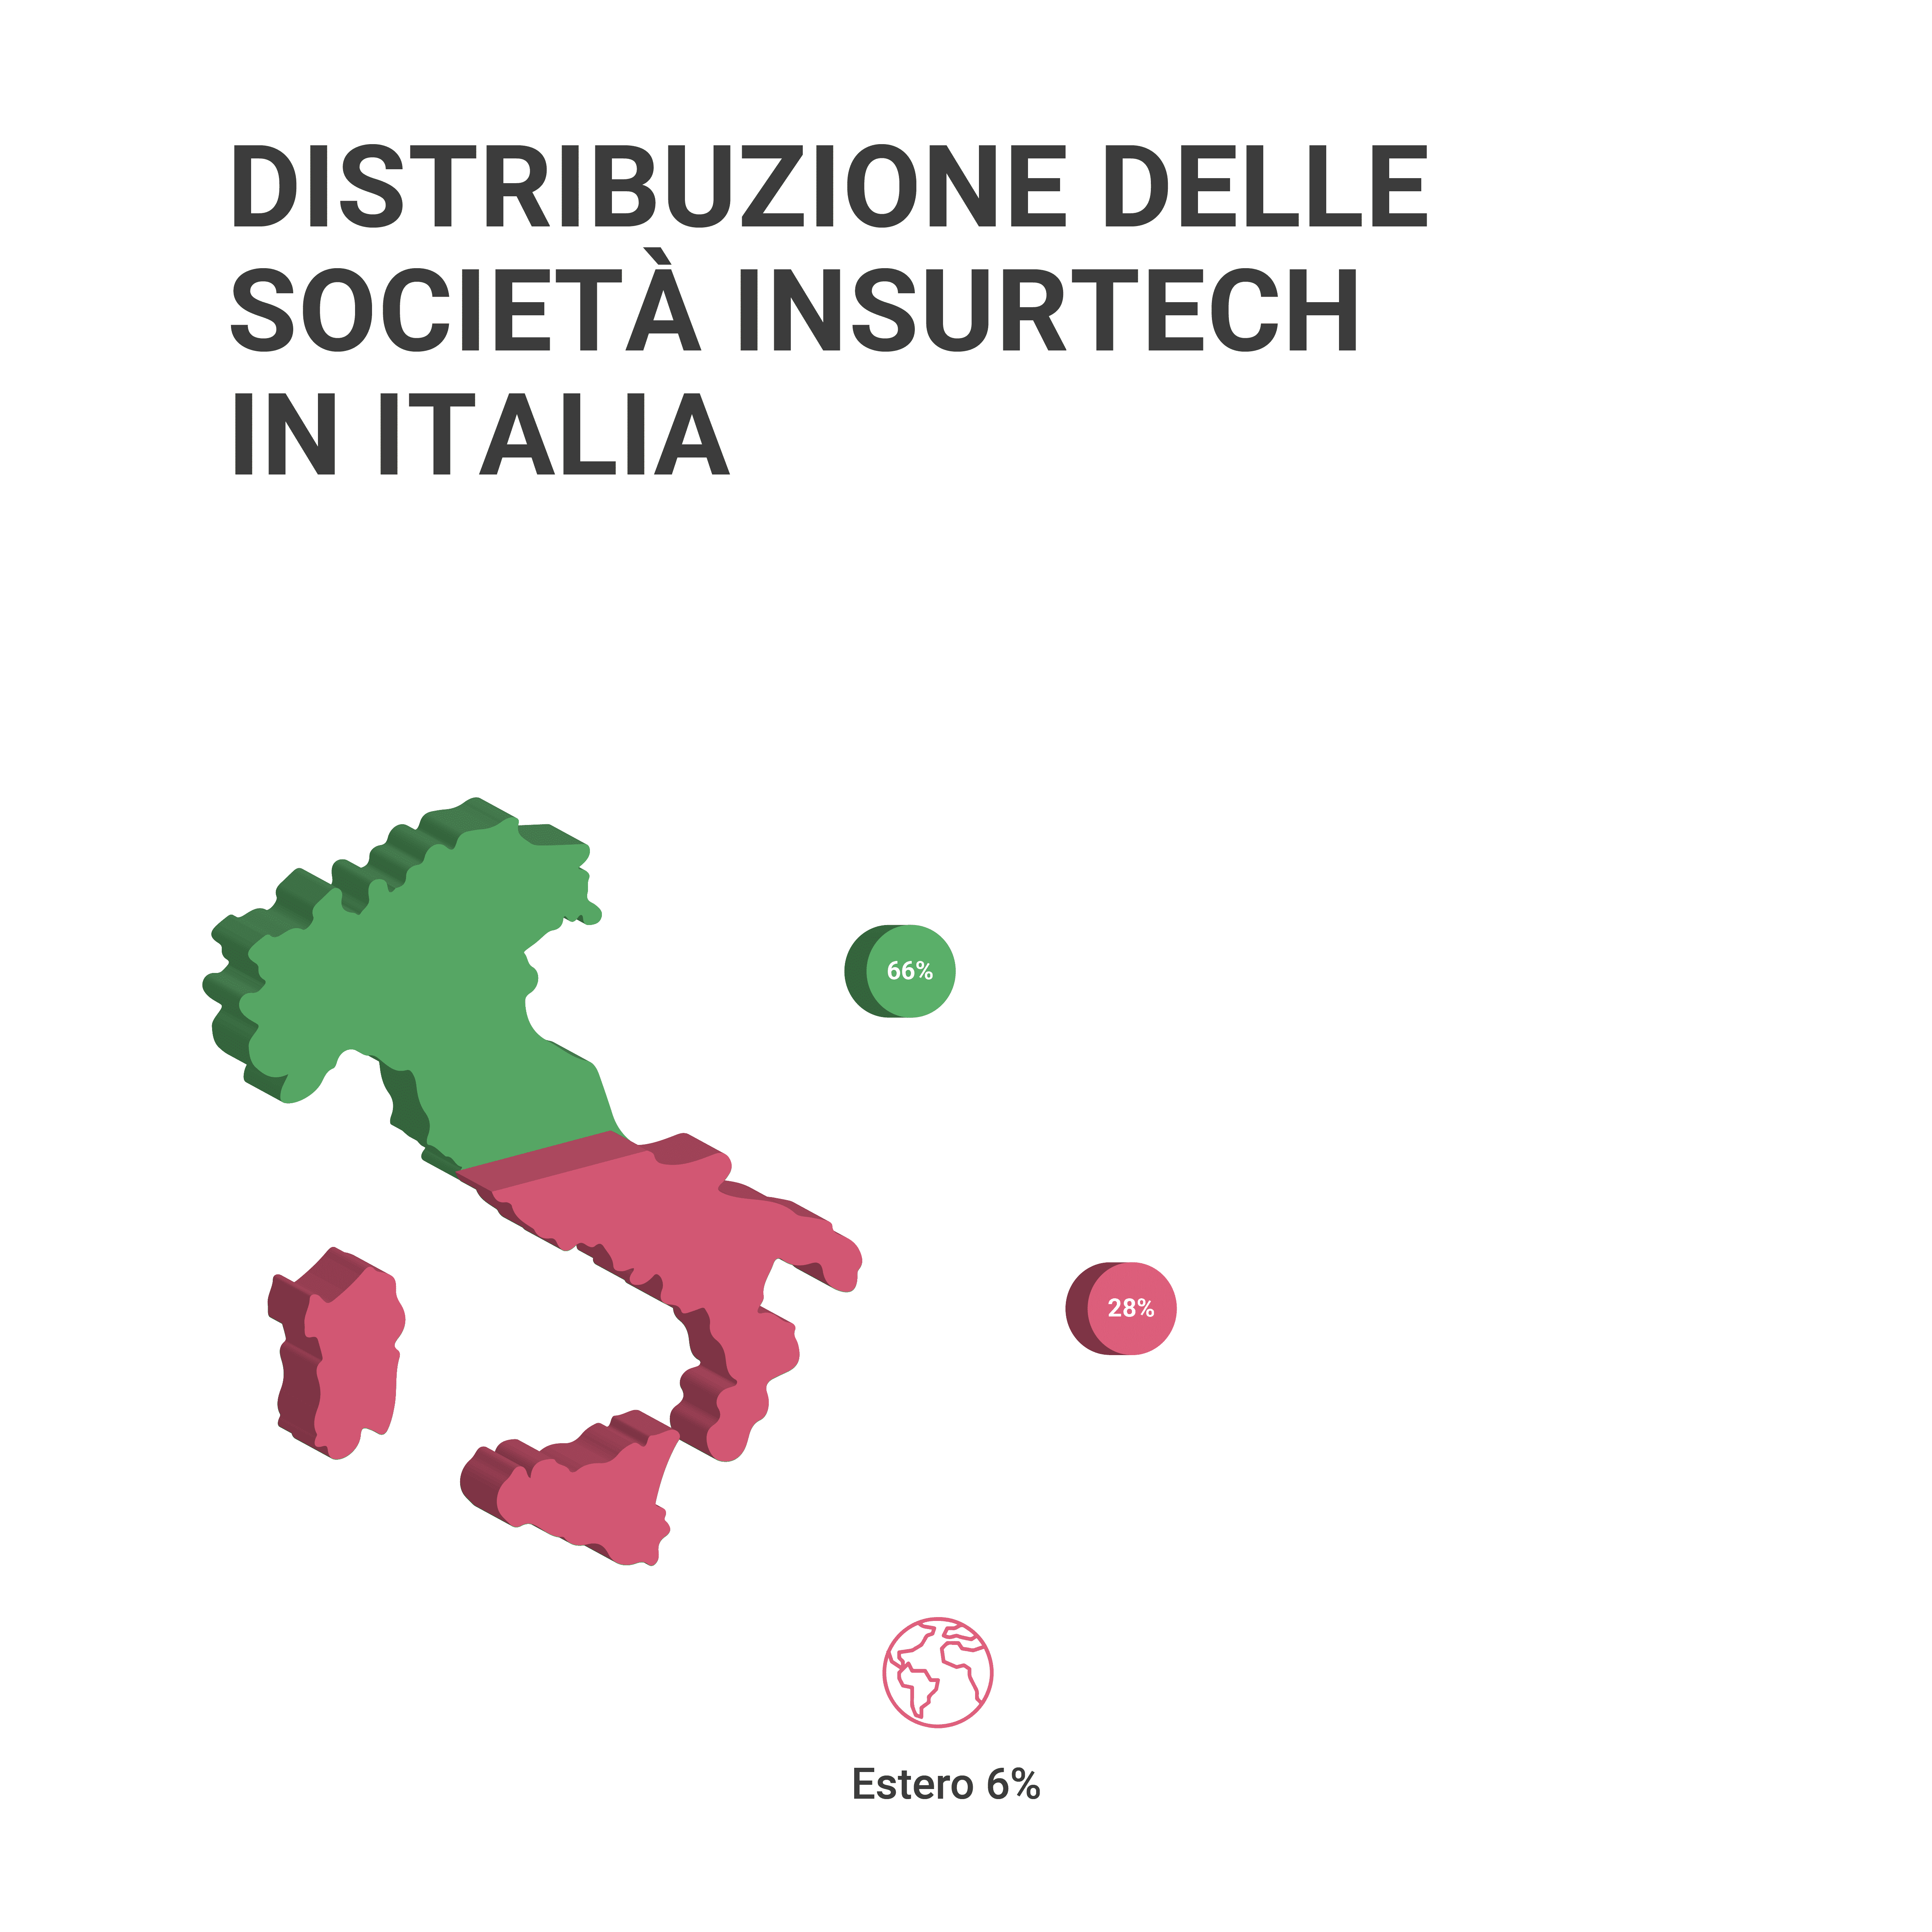 differenza tra nord e sud italia nell'assicurativo e nell'insurtech